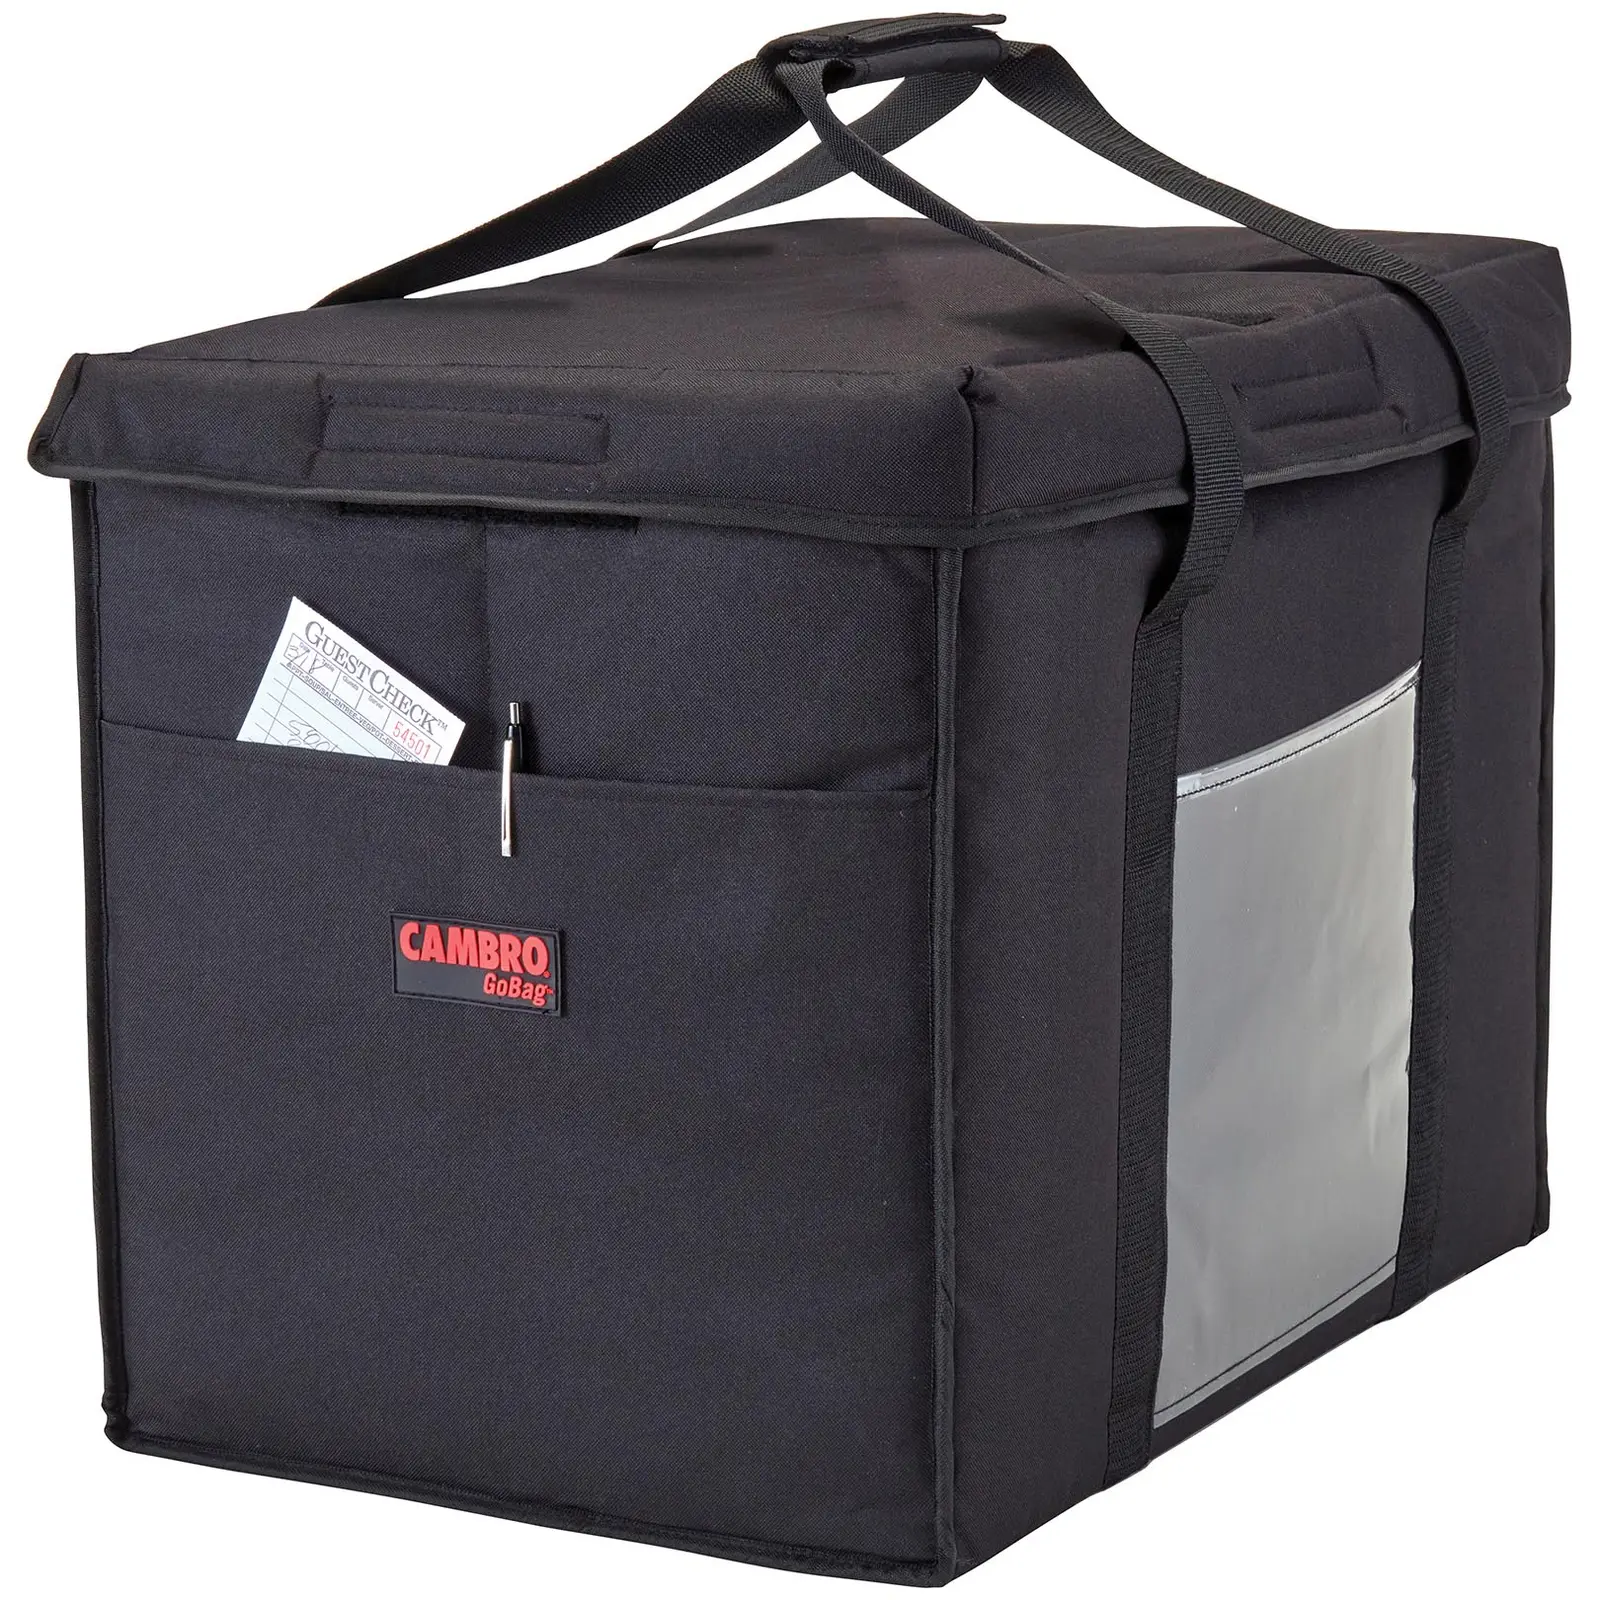 Ételszállító táska – 53.5 x 35.5 x 43 cm – Fekete – összehajtható